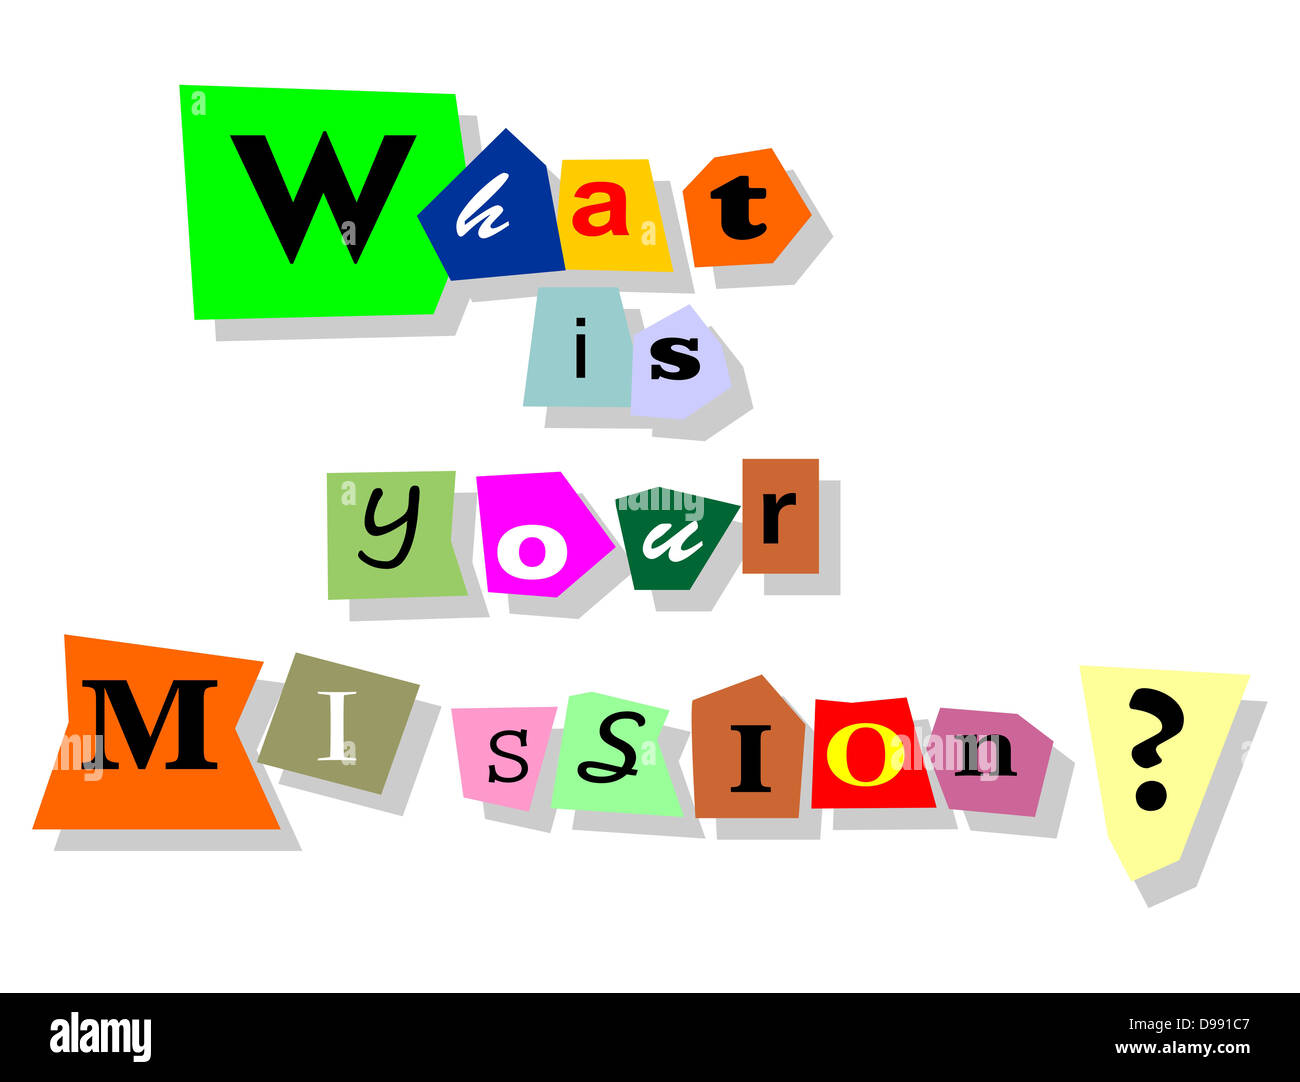 Qual è la vostra missione domanda - collage di testo con parole isolate in tagli alla carta. Foto Stock